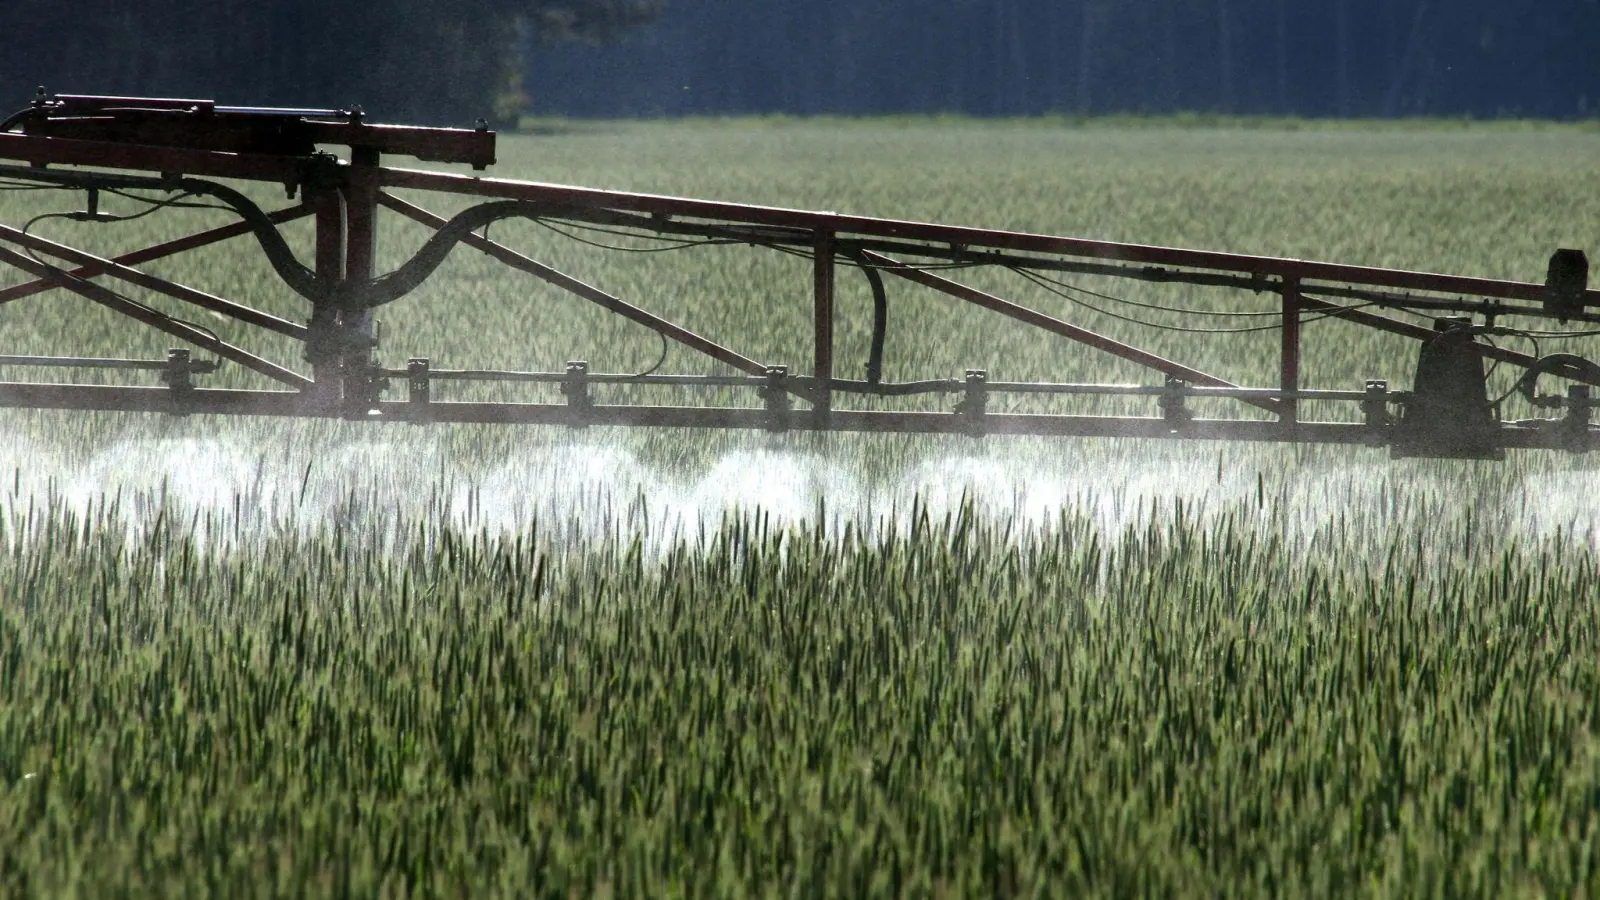 Ein Gesetz zur Reduktion von Pestiziden in der EU hat im EU-Parlament keine Mehrheit gefunden. (Foto: Peter Förster/dpa)